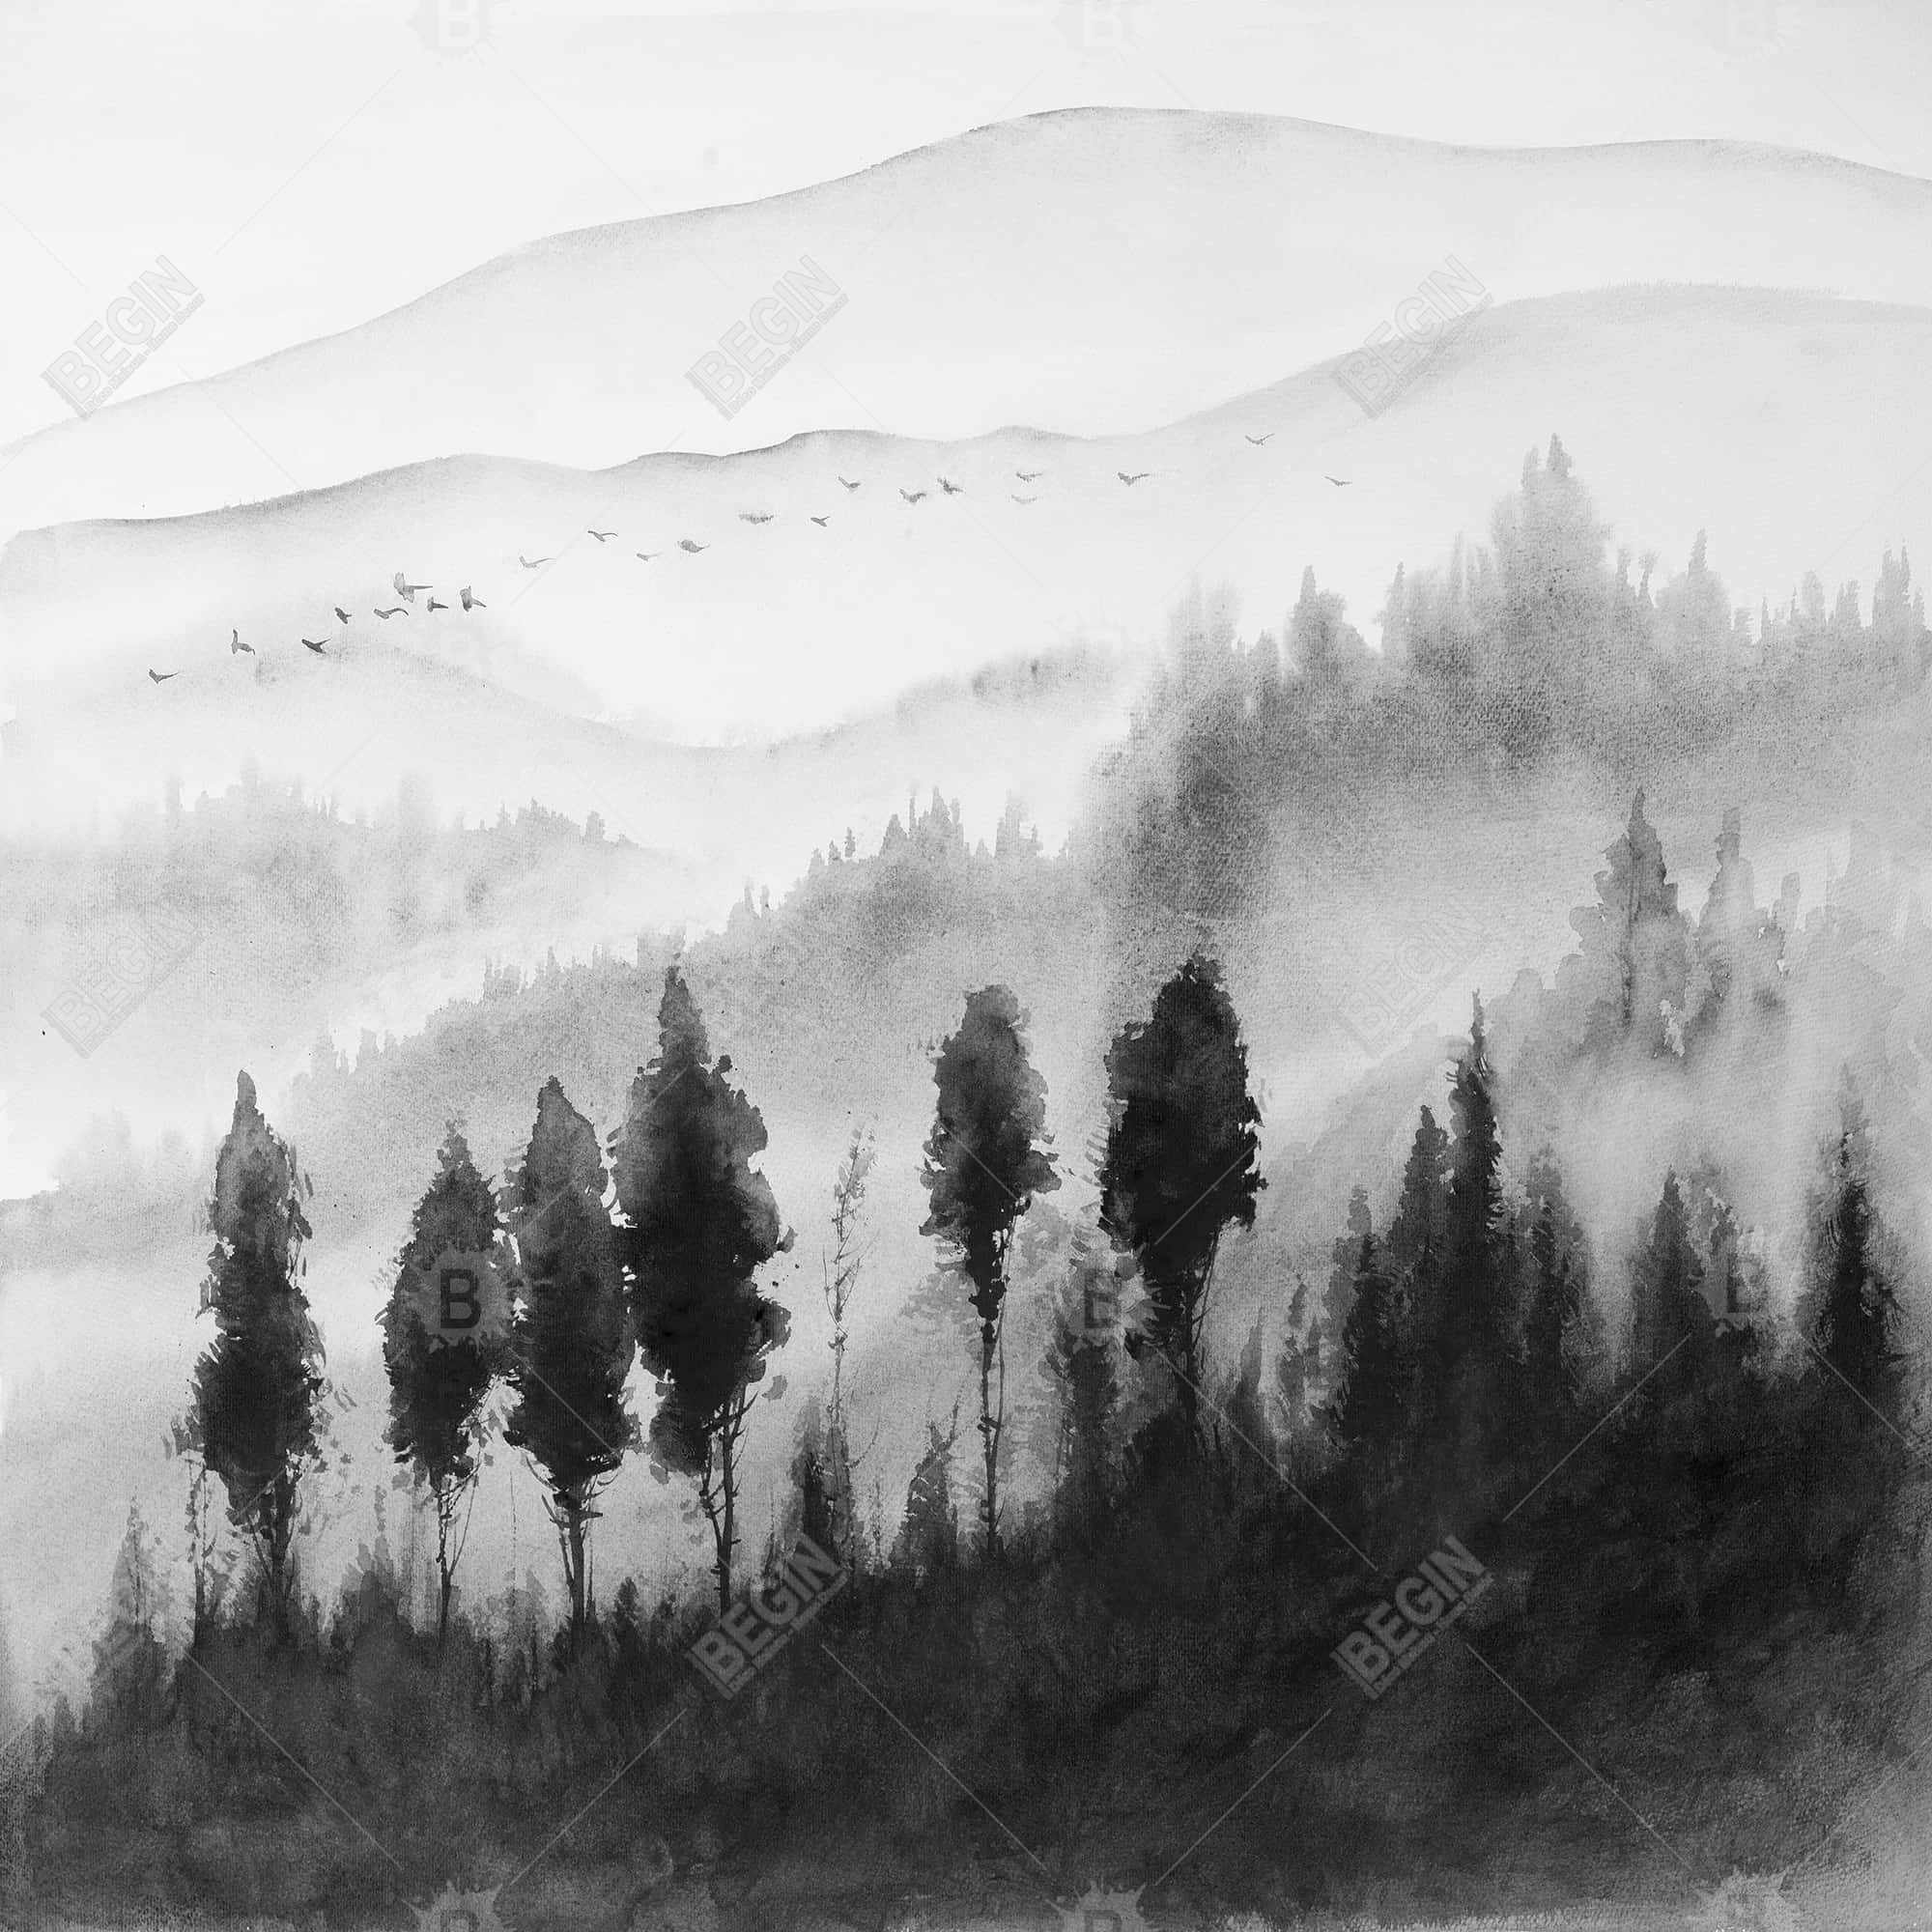 Landscape mono in watercolor